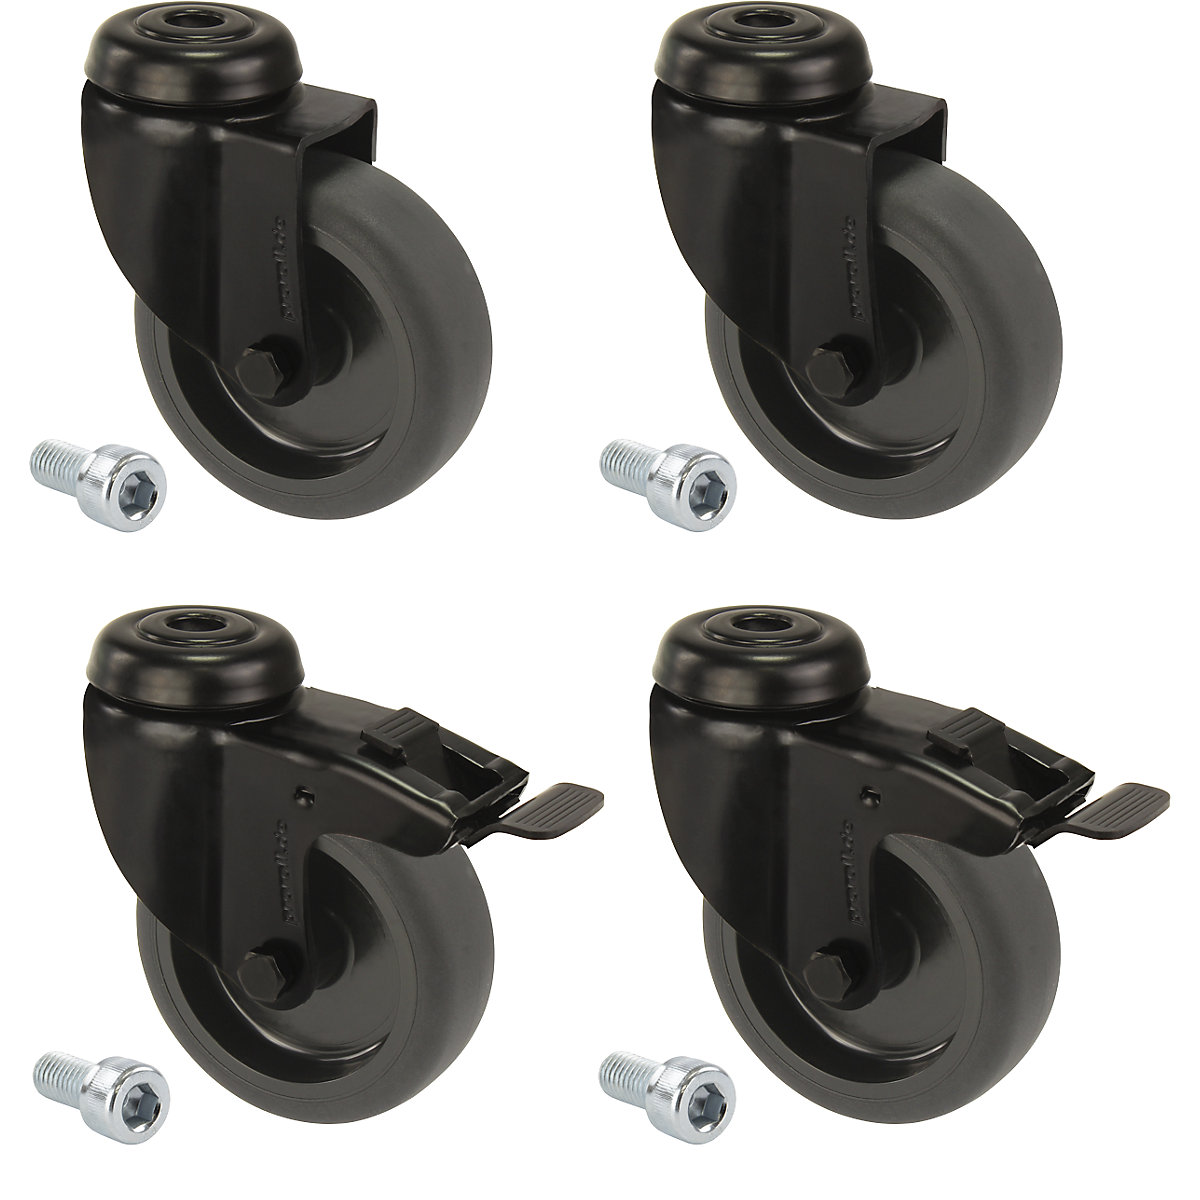 Gummireifen schwarz, thermoplastisch, mit Rückenloch, Set-Angebot Proroll, 4 Lenkrollen, davon 2 mit Doppelstopp, Rad-Ø x Breite 75 x 23 mm-3